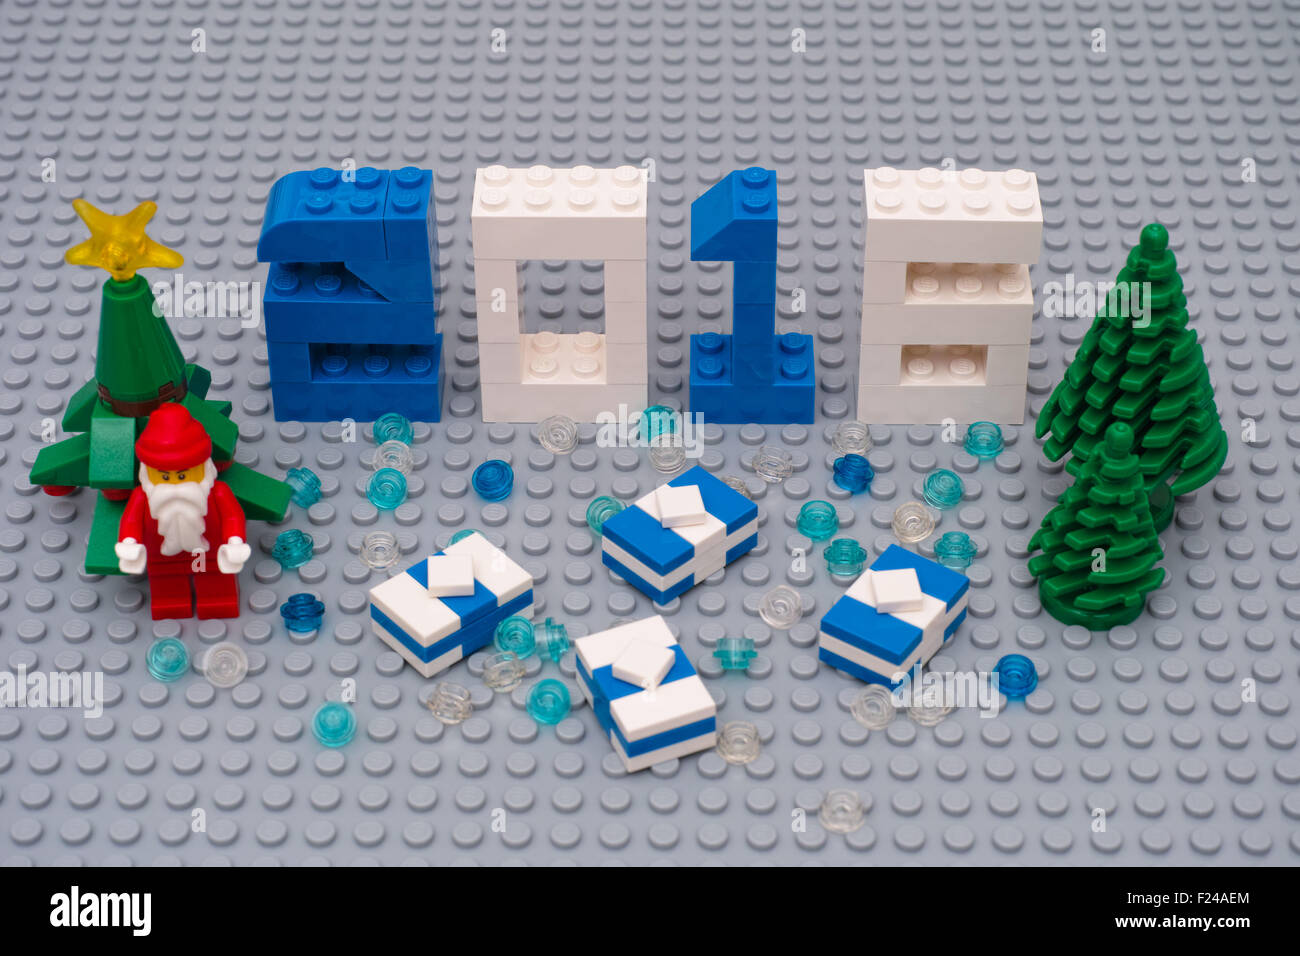 L'année 2016 nouveau concept en Lego. Chiffres 2016, les arbres de Noël,  Santa Clause et présente sur la plaque de base Lego Photo Stock - Alamy